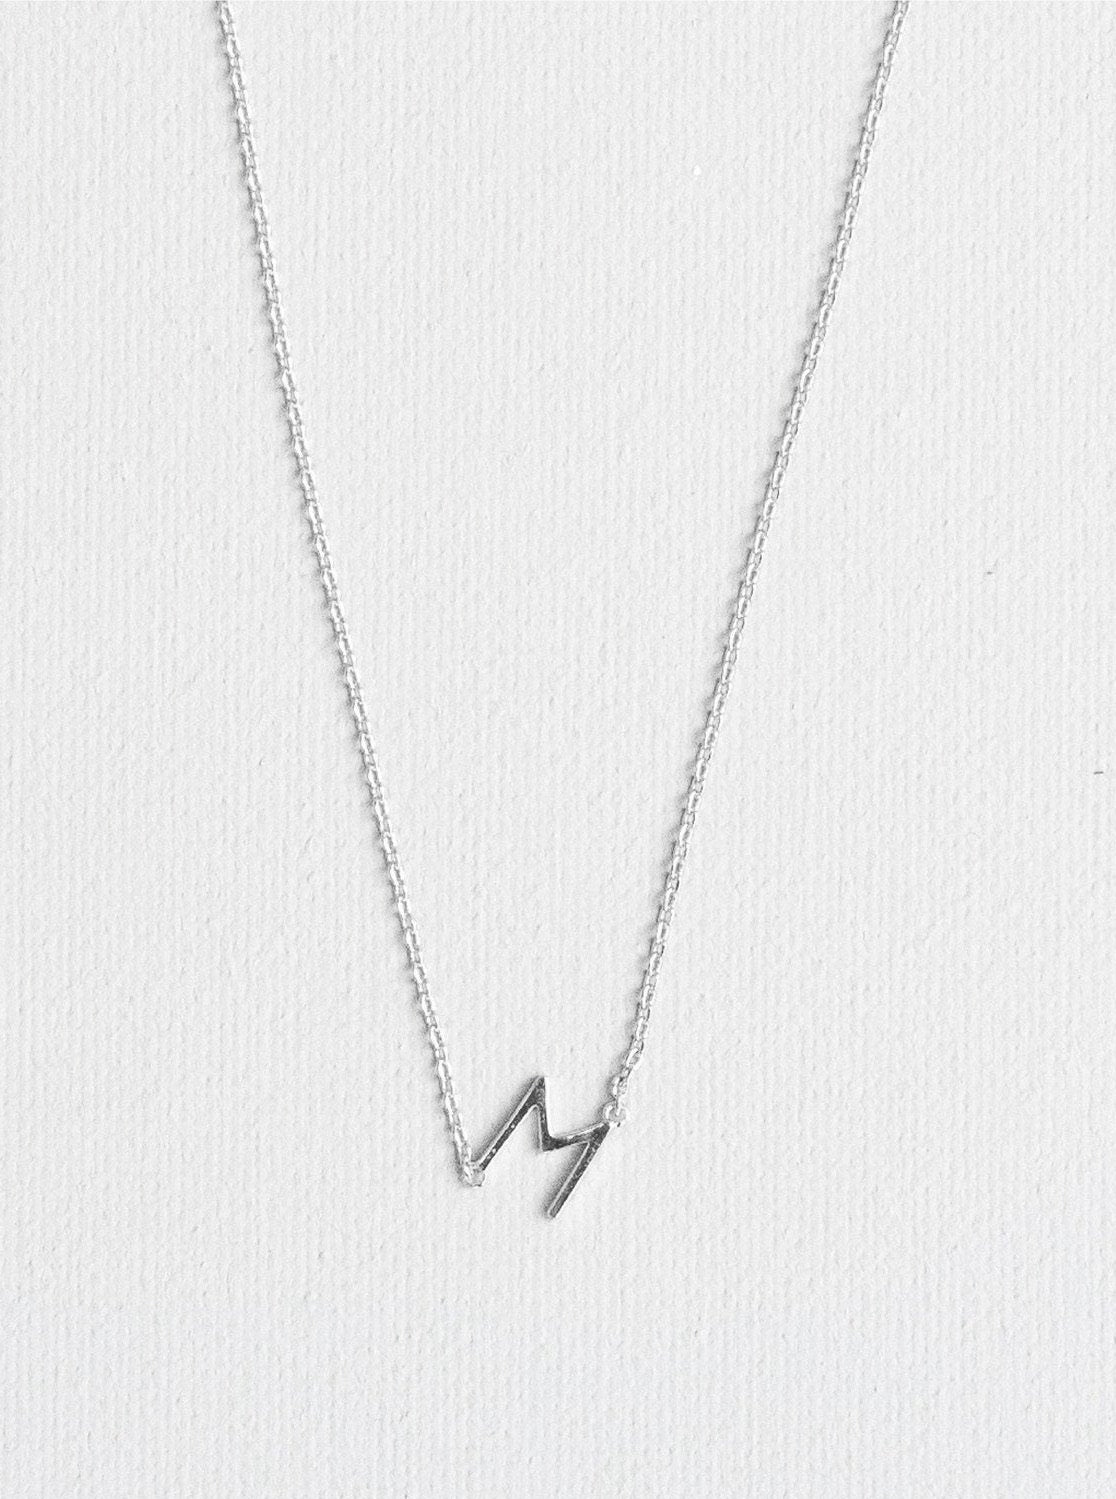 M letter necklace